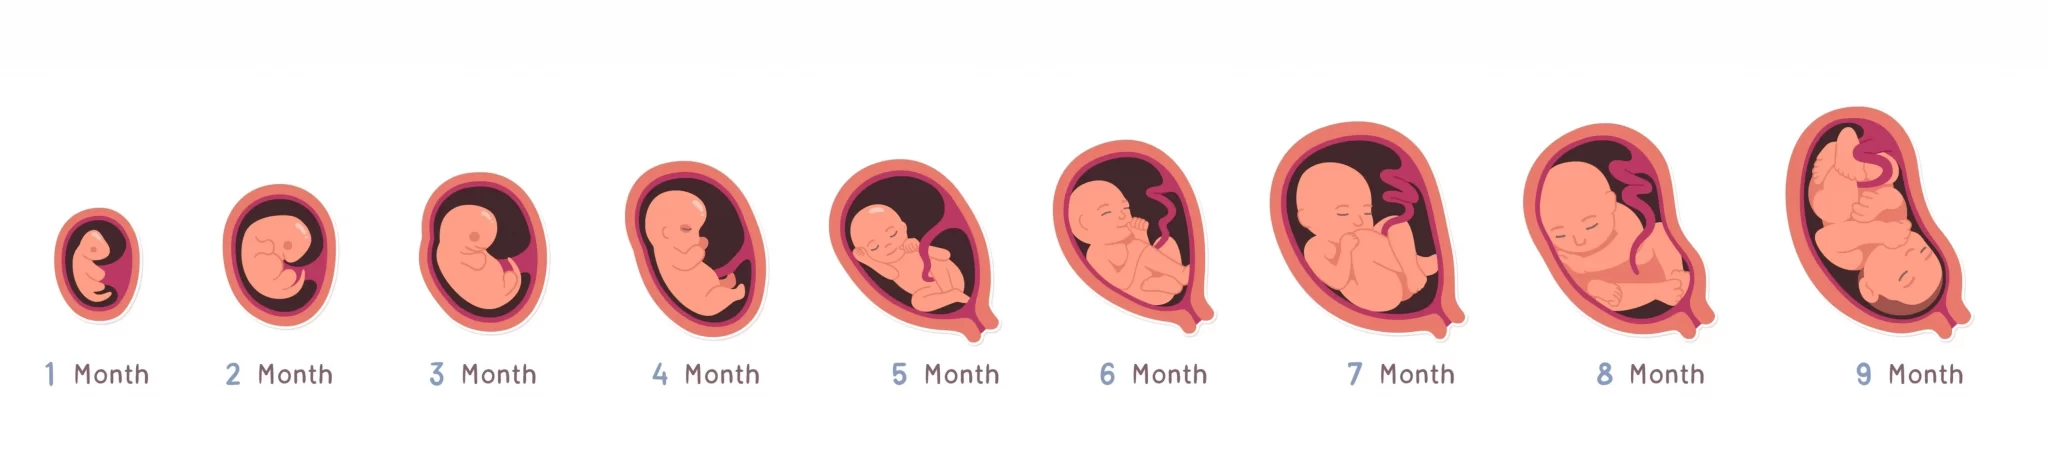 子宮内での胎児の成長